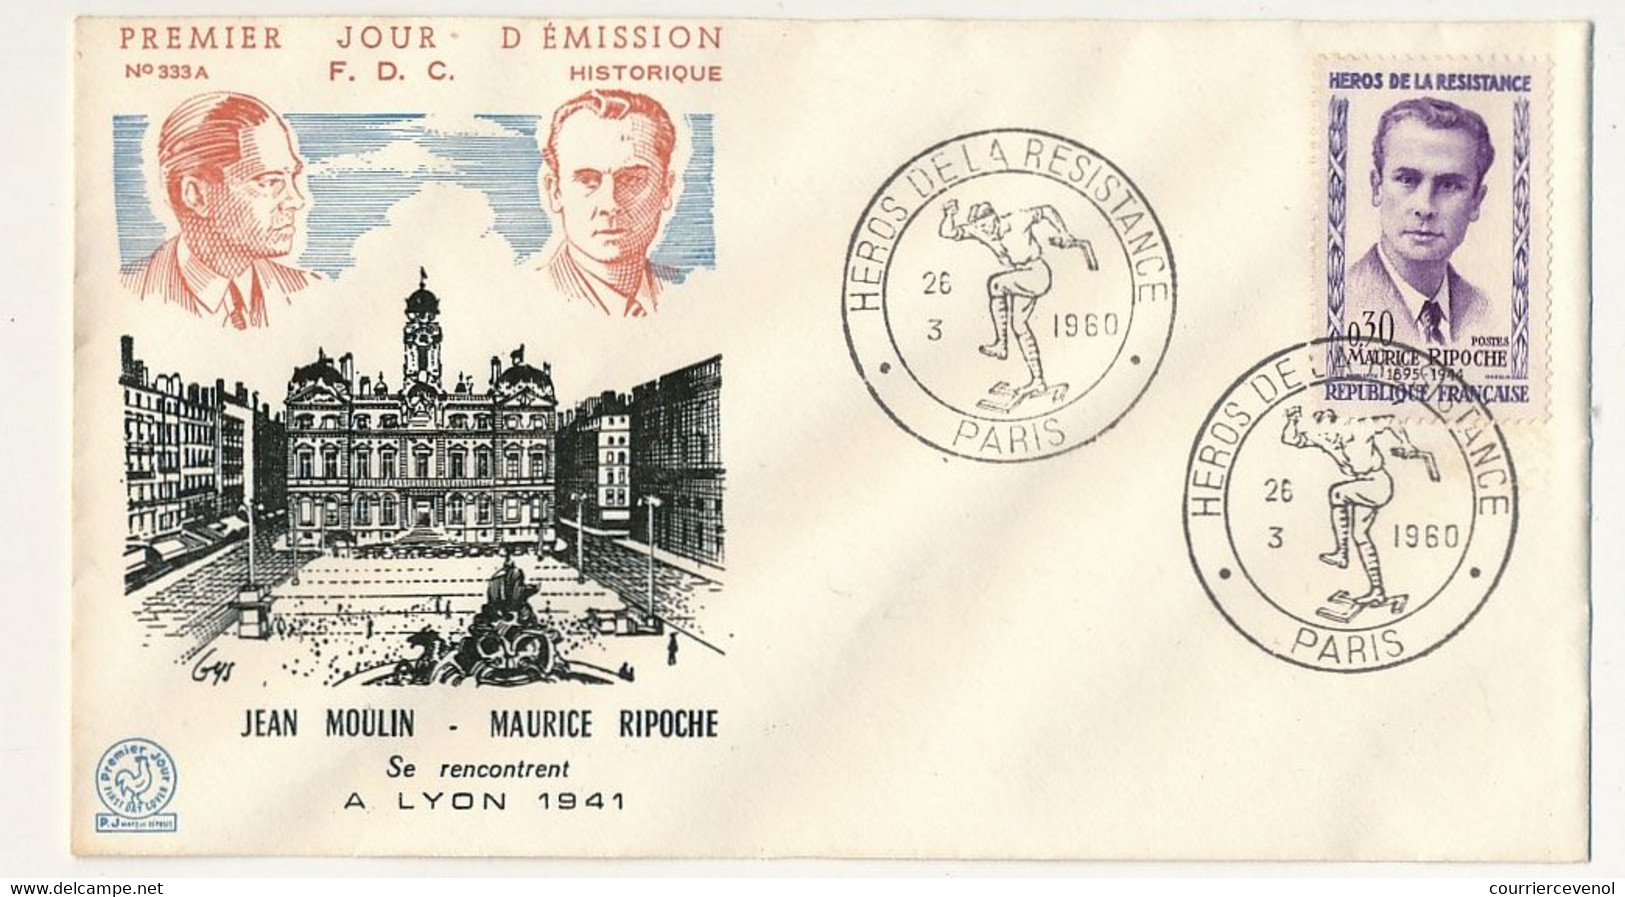 11 enveloppes FDC "Héros de la Résistance" 1960 - Masse, Ripoche, Debeaumarché, Vieljeux, Bompain - dont cachets second.